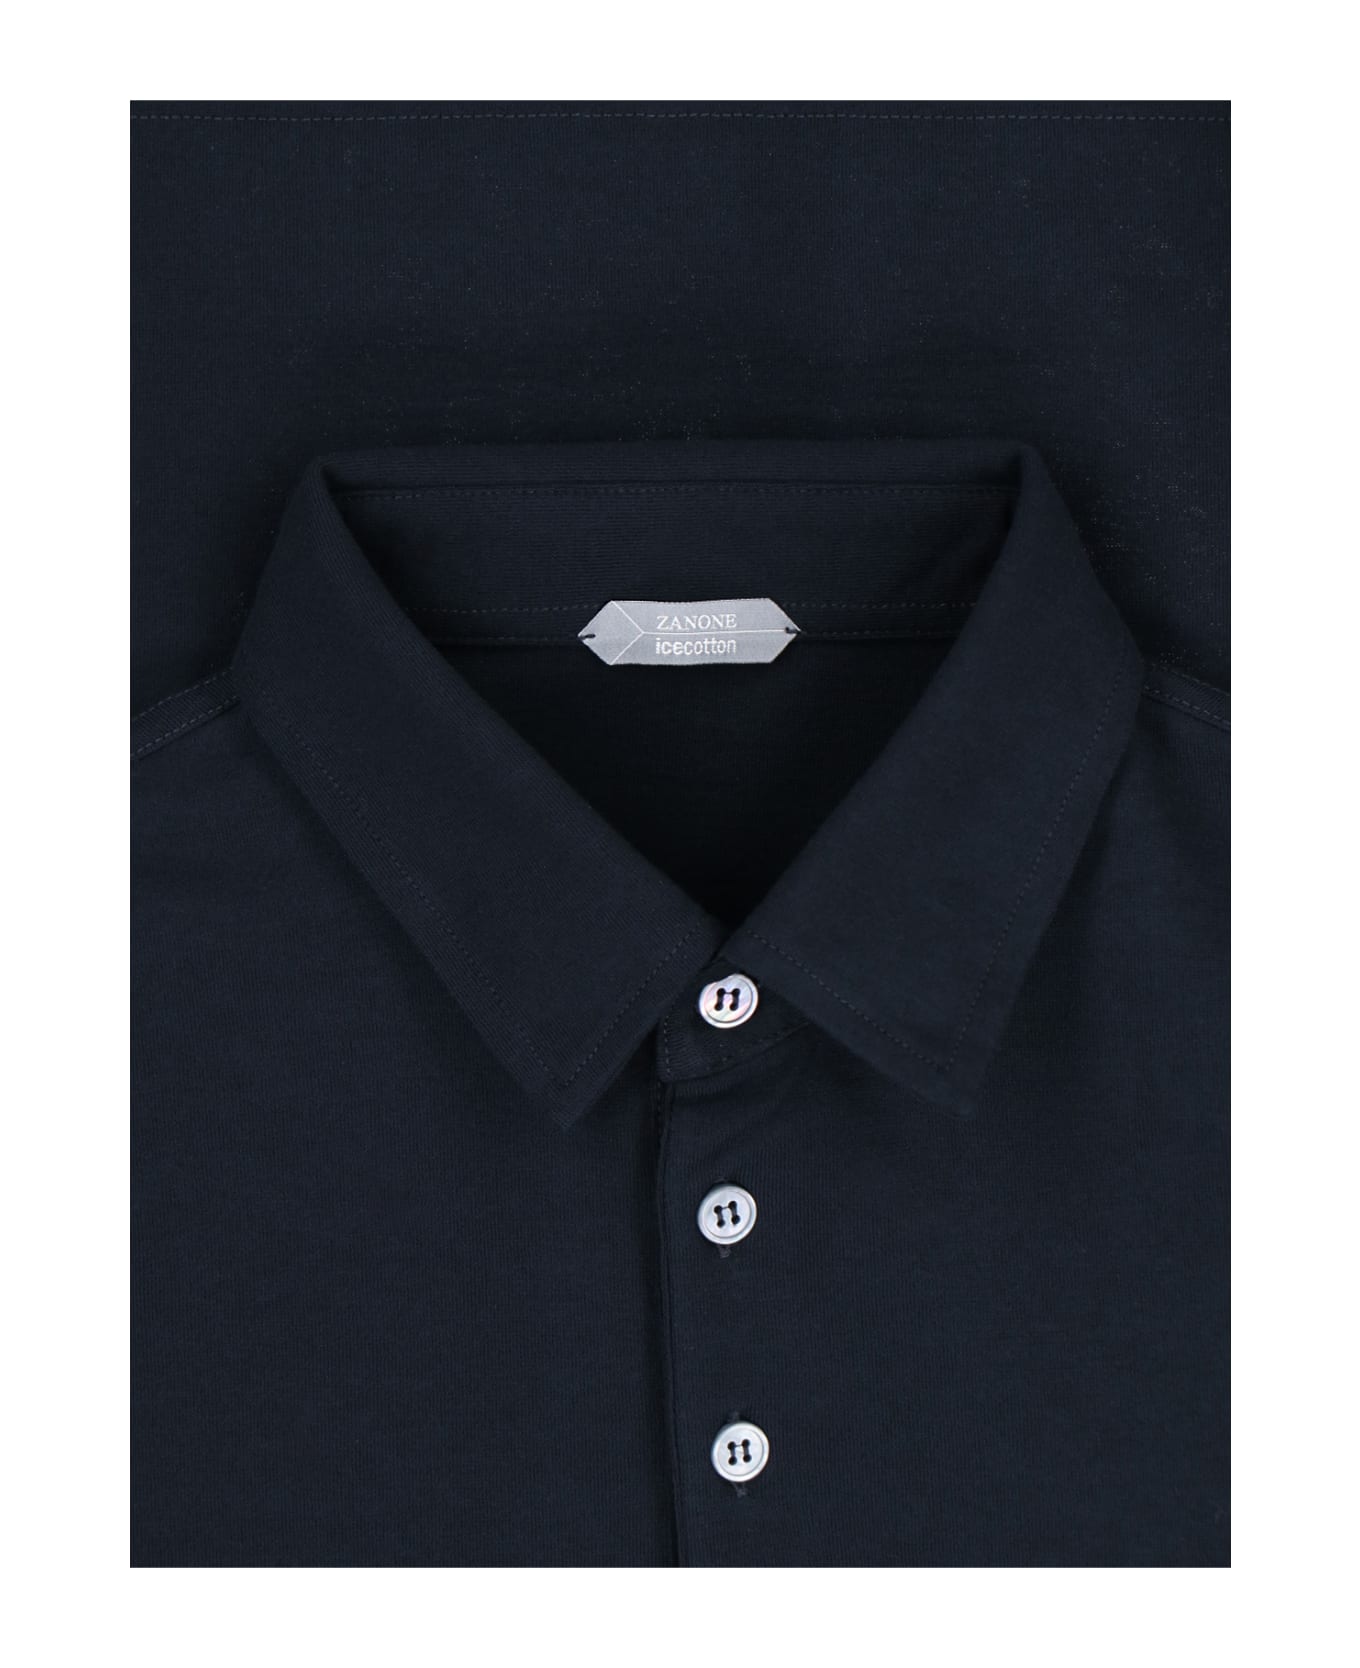 Zanone Basic Polo Shirt - Blu